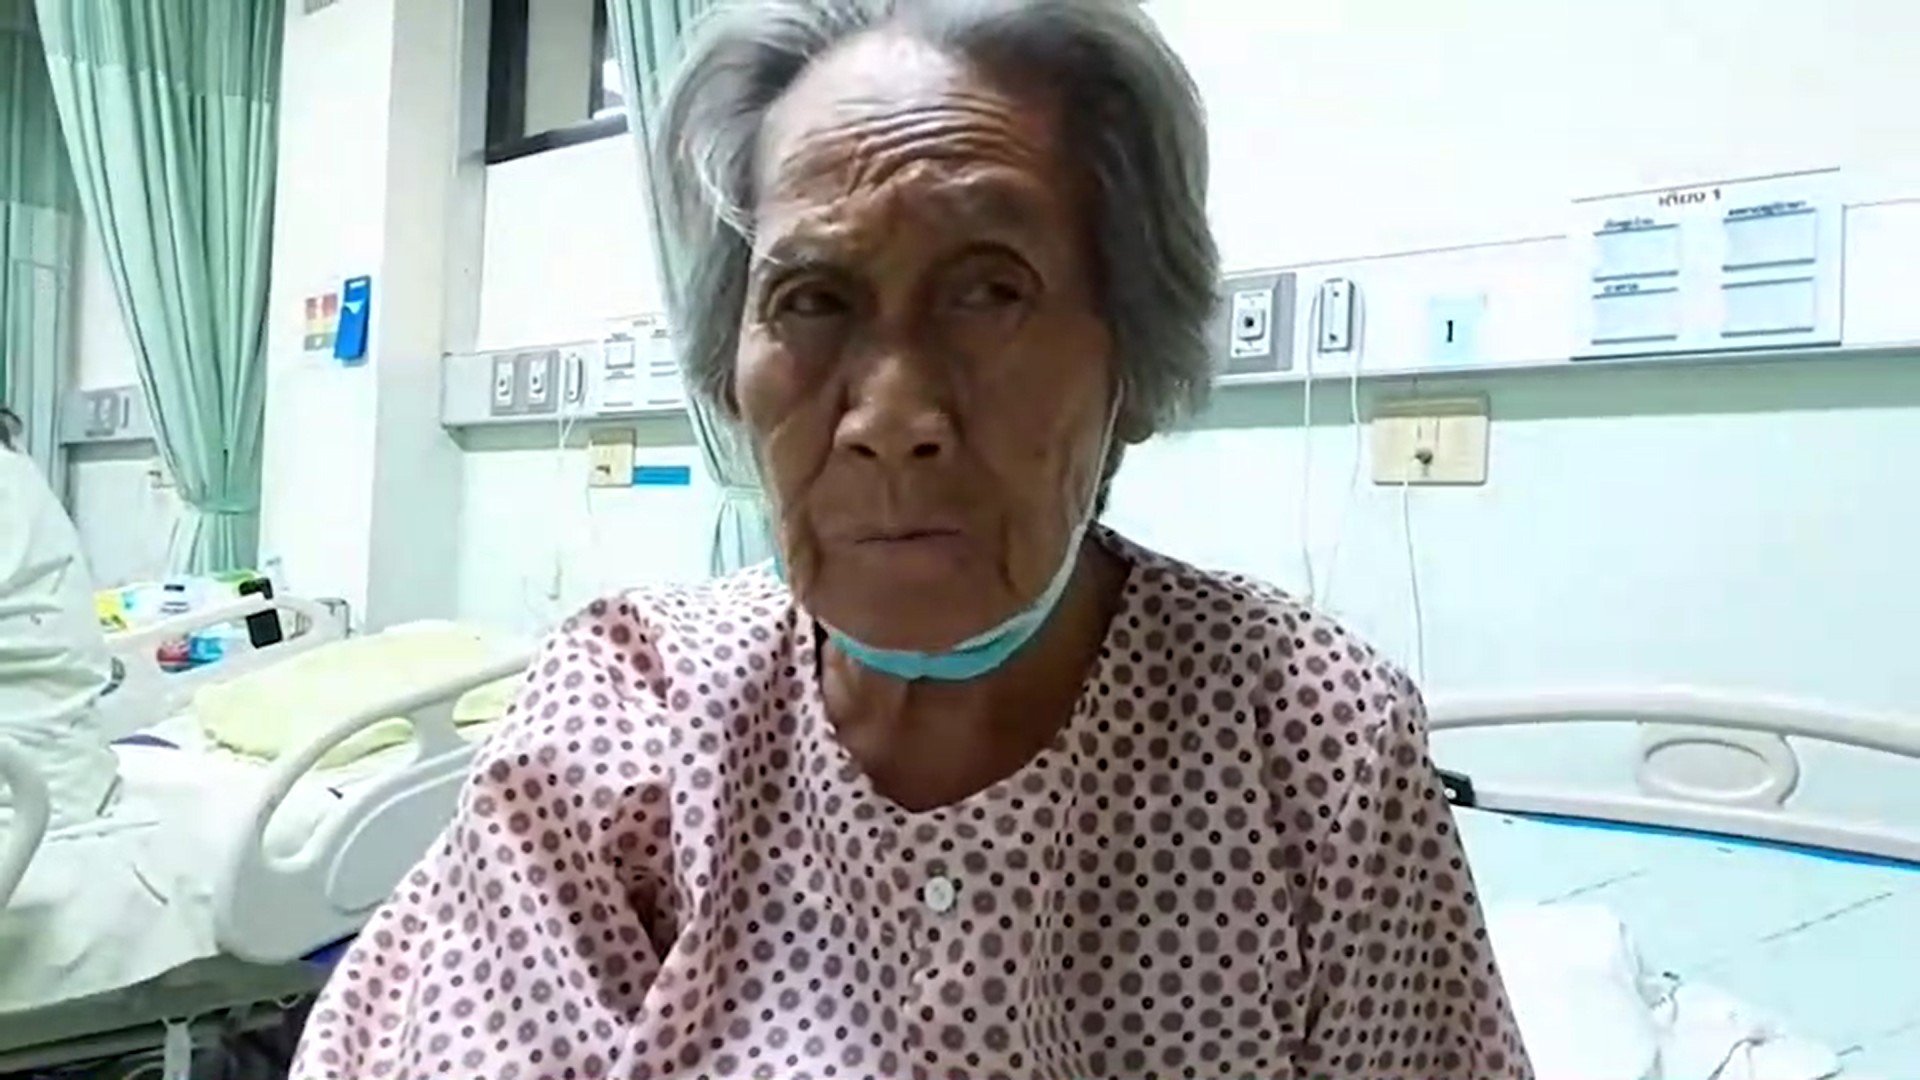 ชาวบ้านผวา หนุ่มป่วยจิตไล่ลวนลามปลุกปล้ำ หญิงชราวัย 85 ปี ก็ไม่เว้น